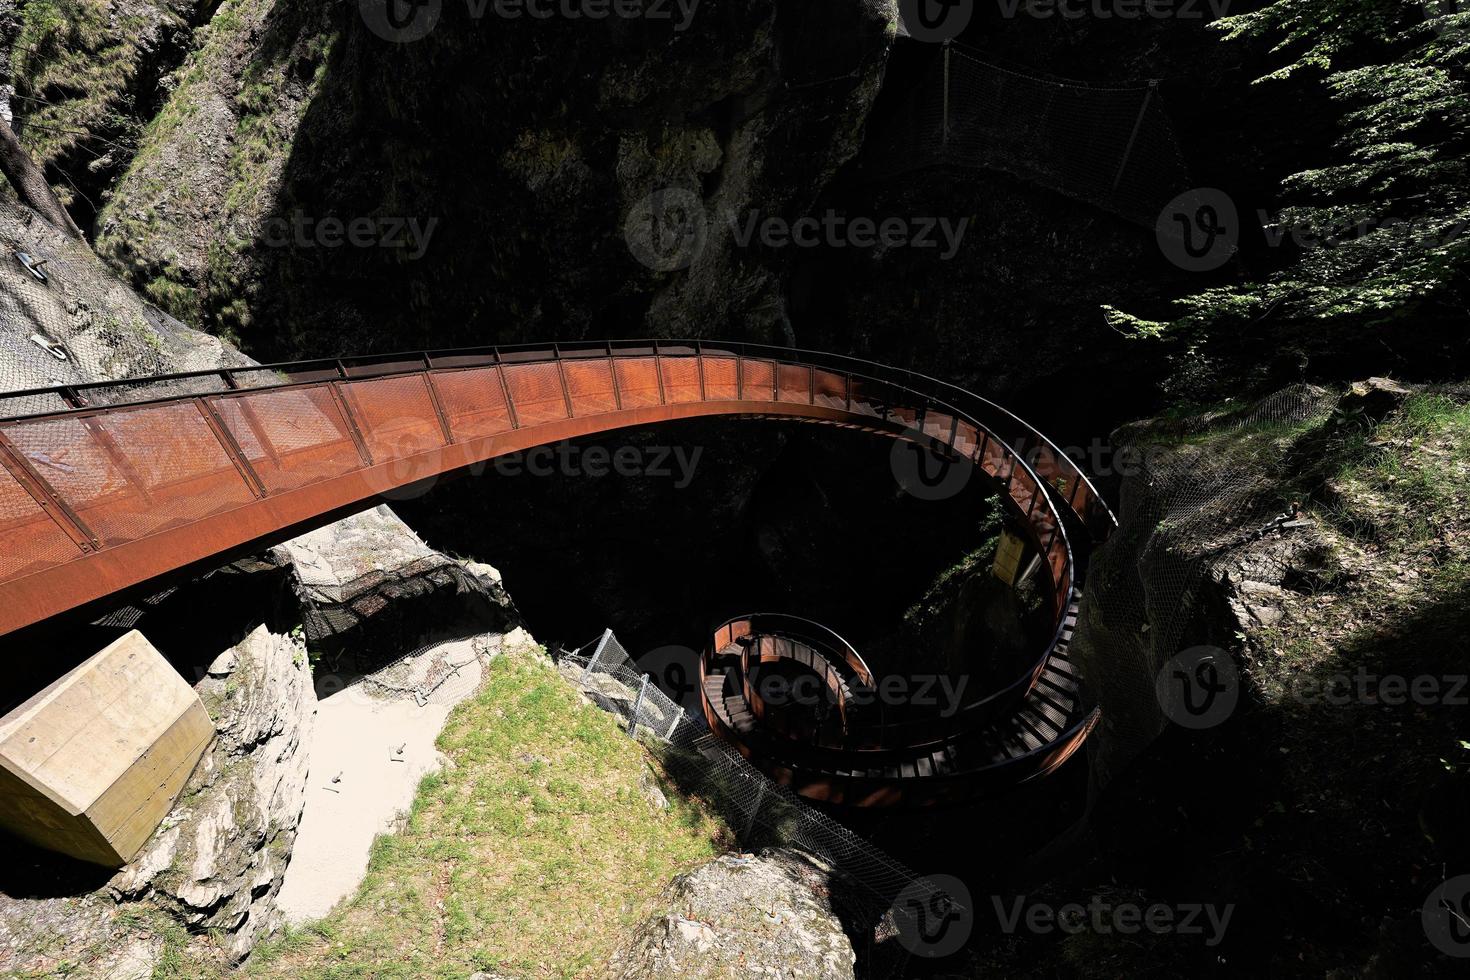 escalera de caracol de metal en liechtensteinklamm o desfiladero de liechtenstein, particularmente estrecho desfiladero con paredes, ubicado en los alpes austriacos, cerca de salzburgo, austria. foto